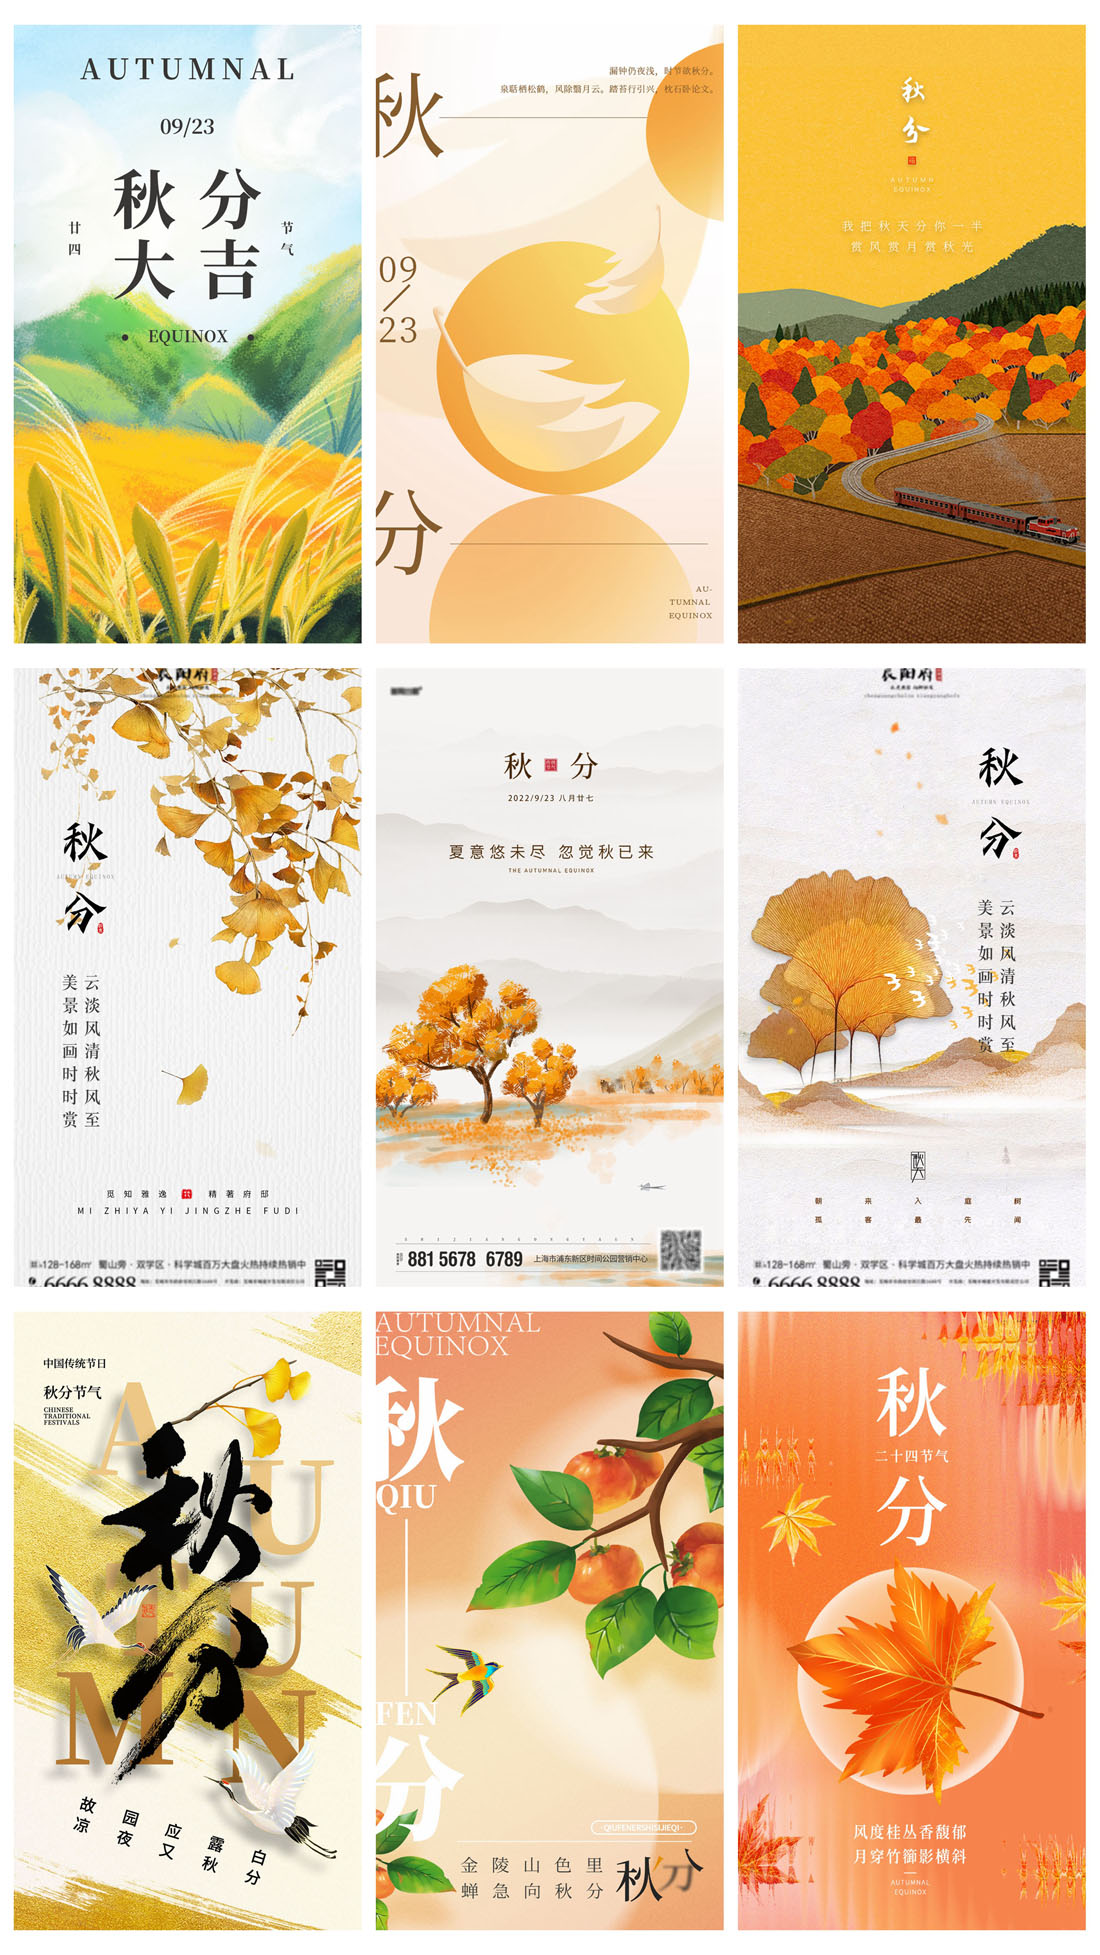 52款中国传统节日二十四节气秋分节日宣传海报PSD模板 设计素材 第6张